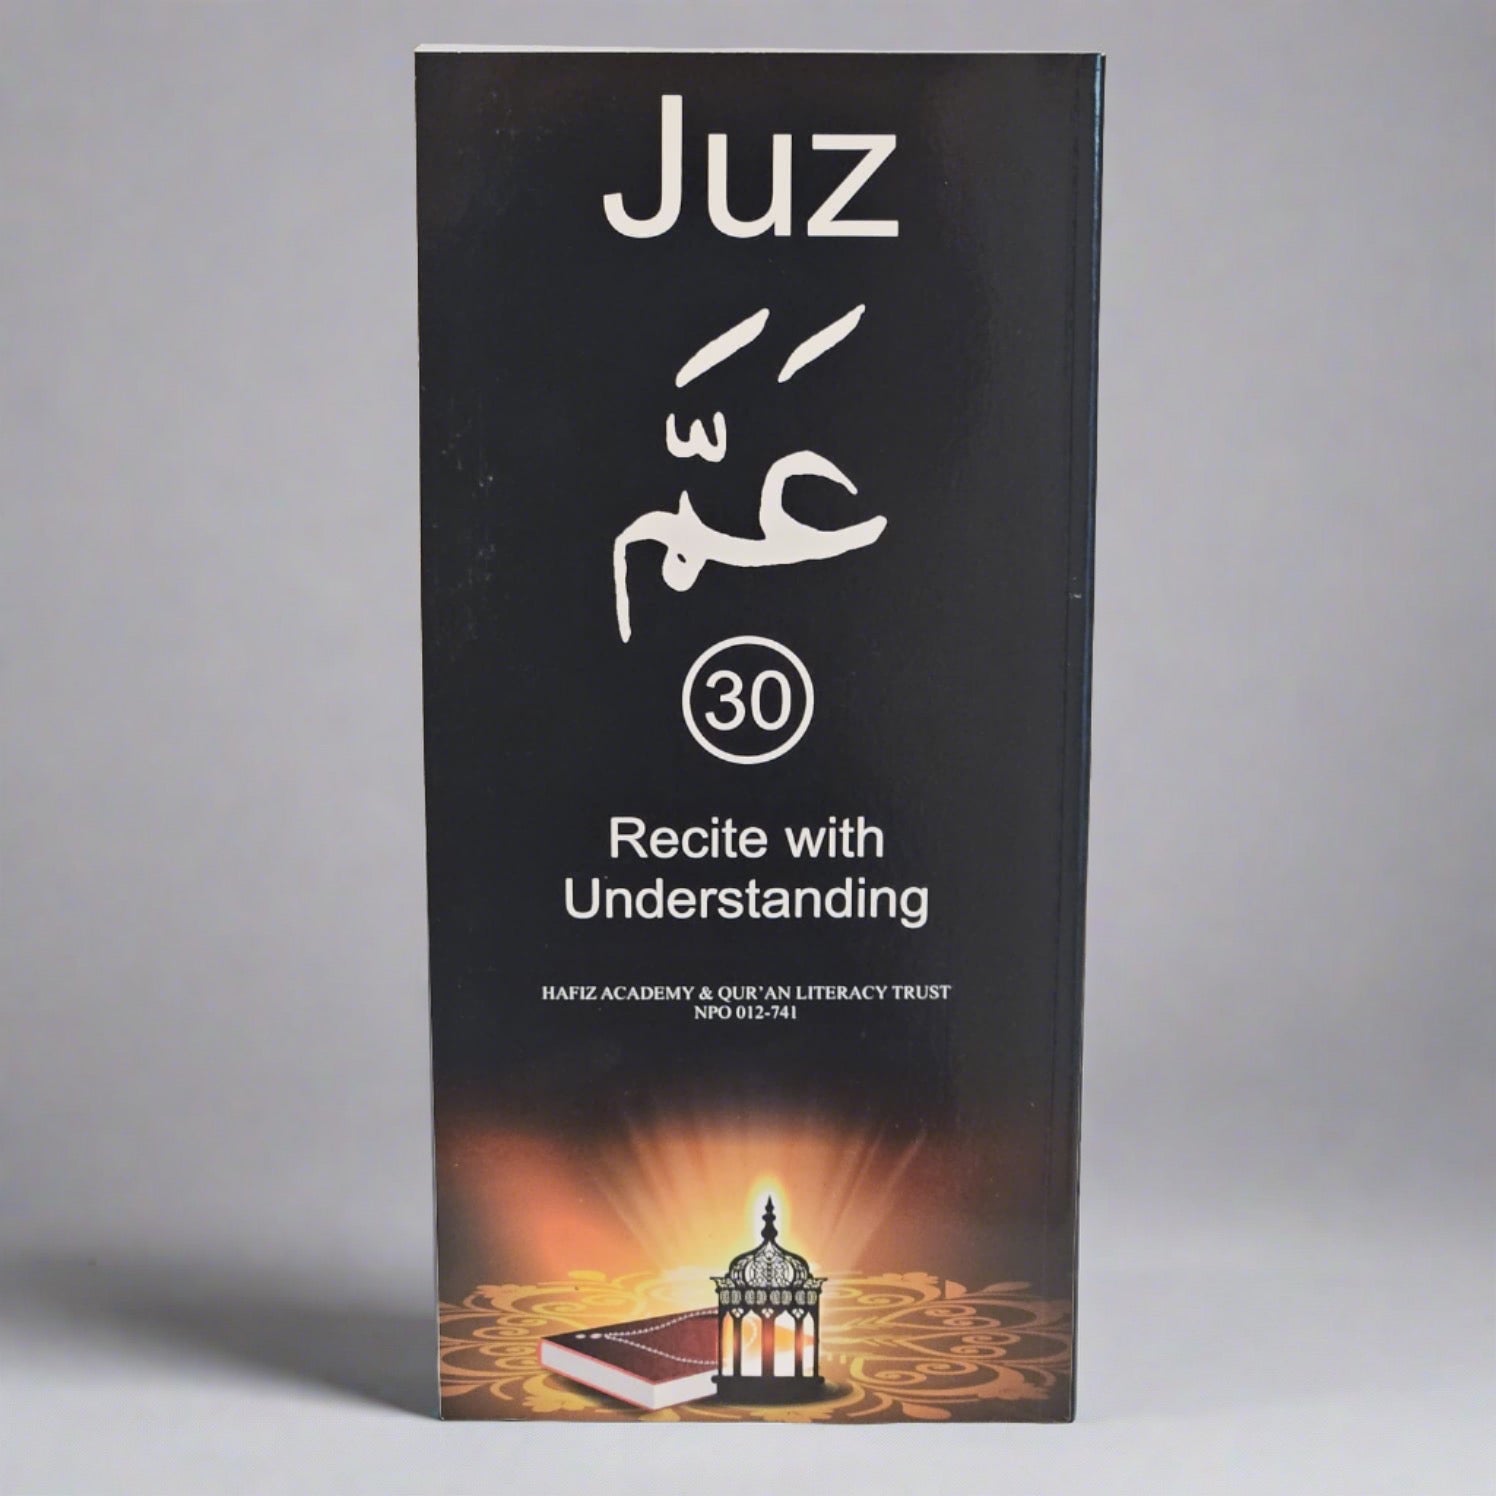 Juz Amma (30) Recite with Understanding